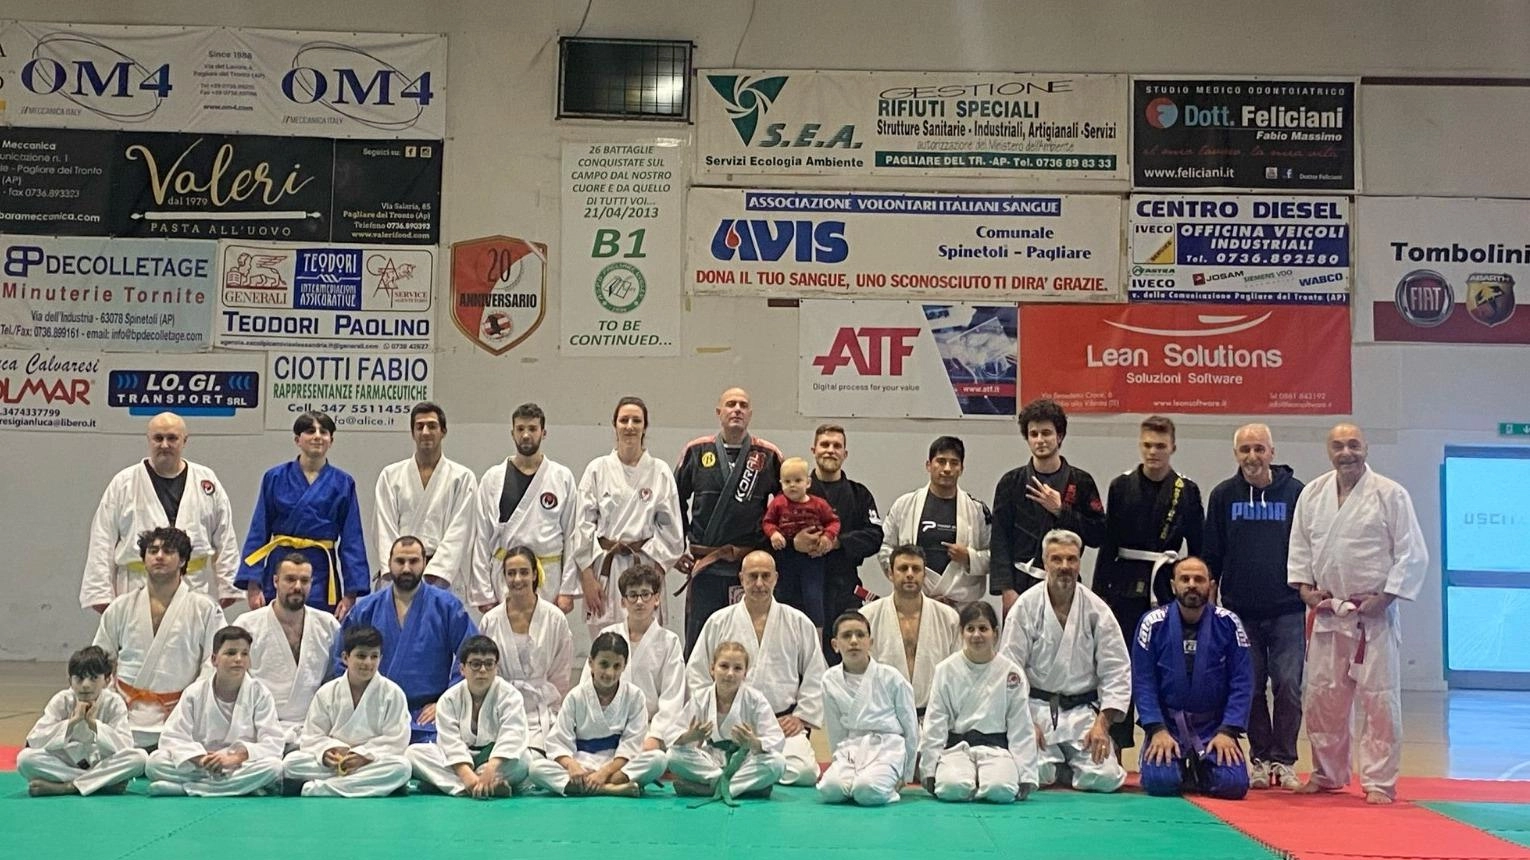 Nel Palazzetto dello Sport di Pagliare si è svolto un allenamento interregionale di arti marziali, con il maestro Giuseppe Solito premiato per il settimo dan di judo. Presenti anche altre associazioni del settore.